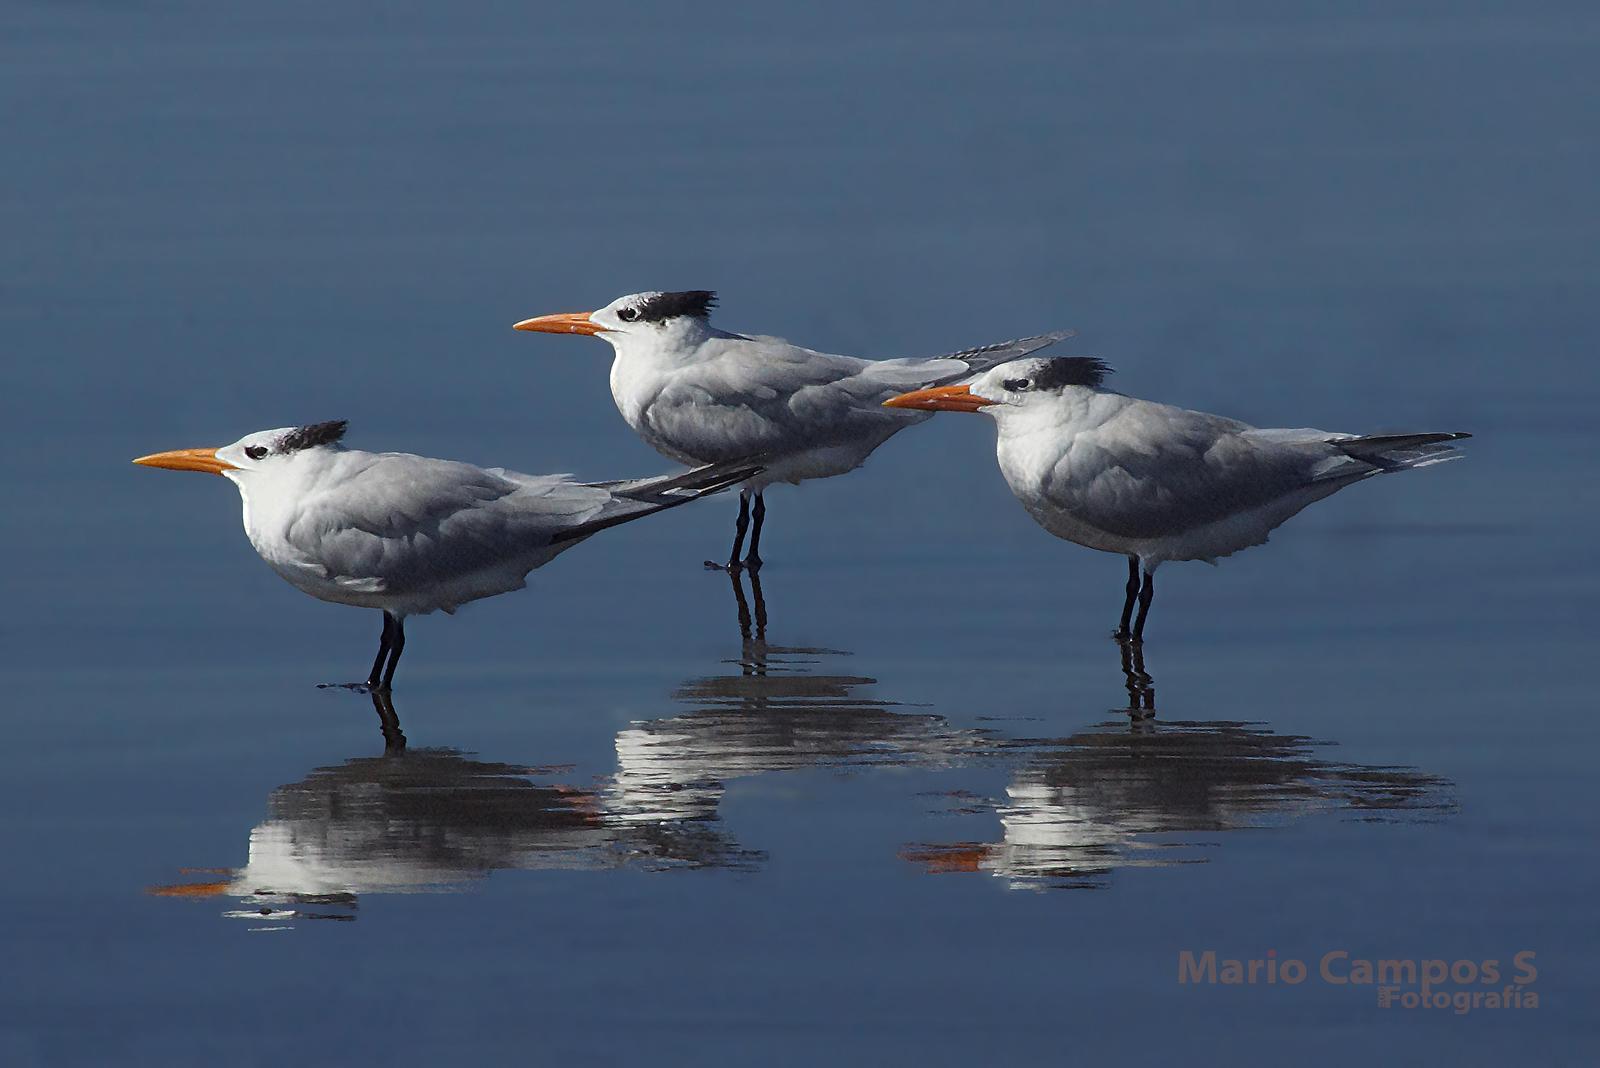 Royal Tern Photo by Mario E Campos S